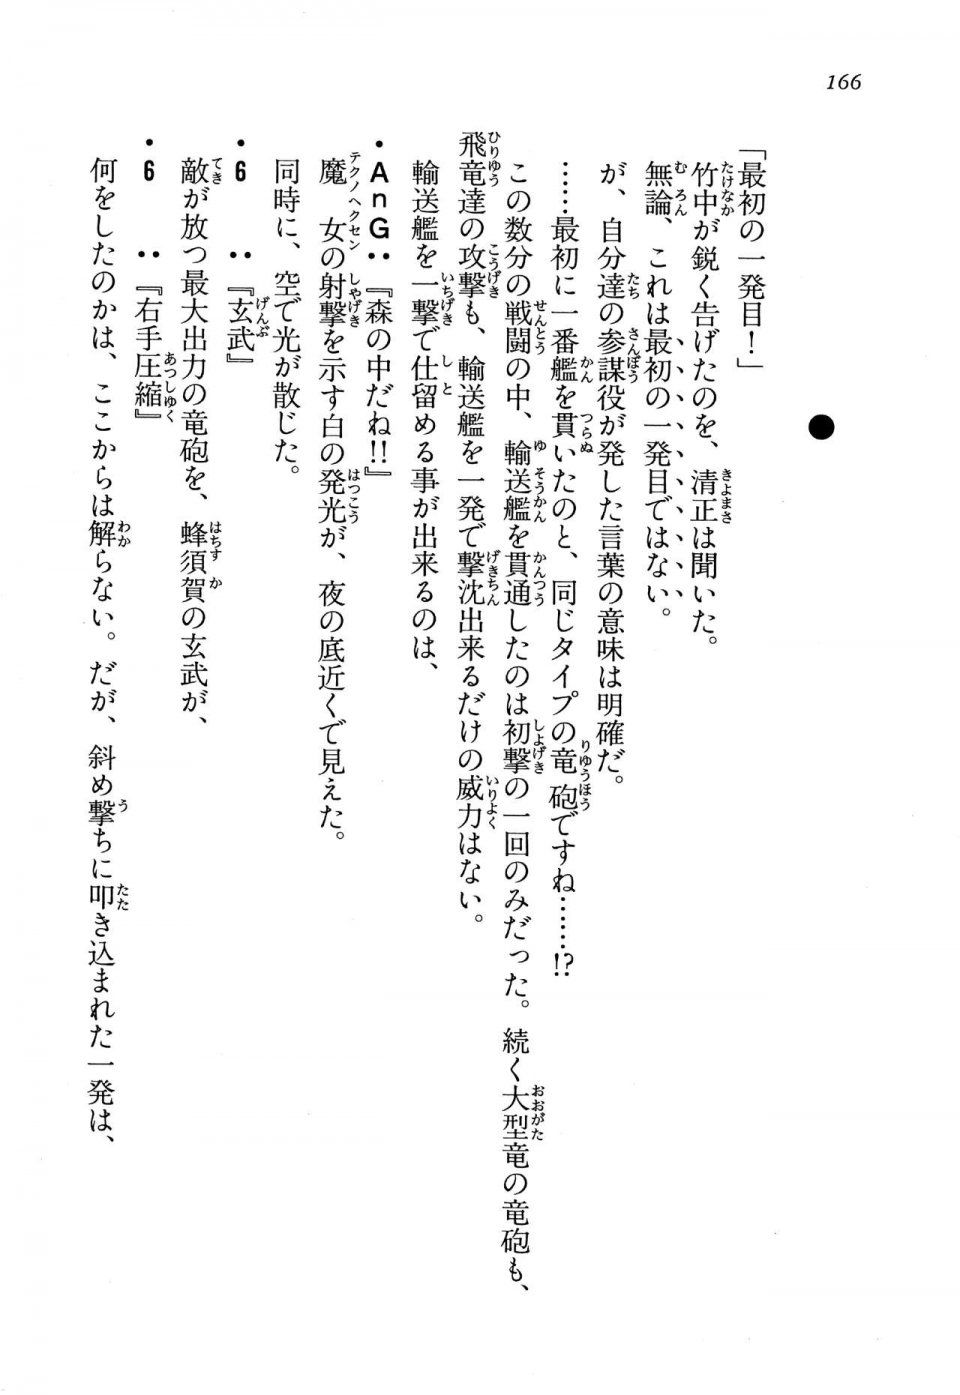 Kyoukai Senjou no Horizon LN Vol 13(6A) - Photo #166